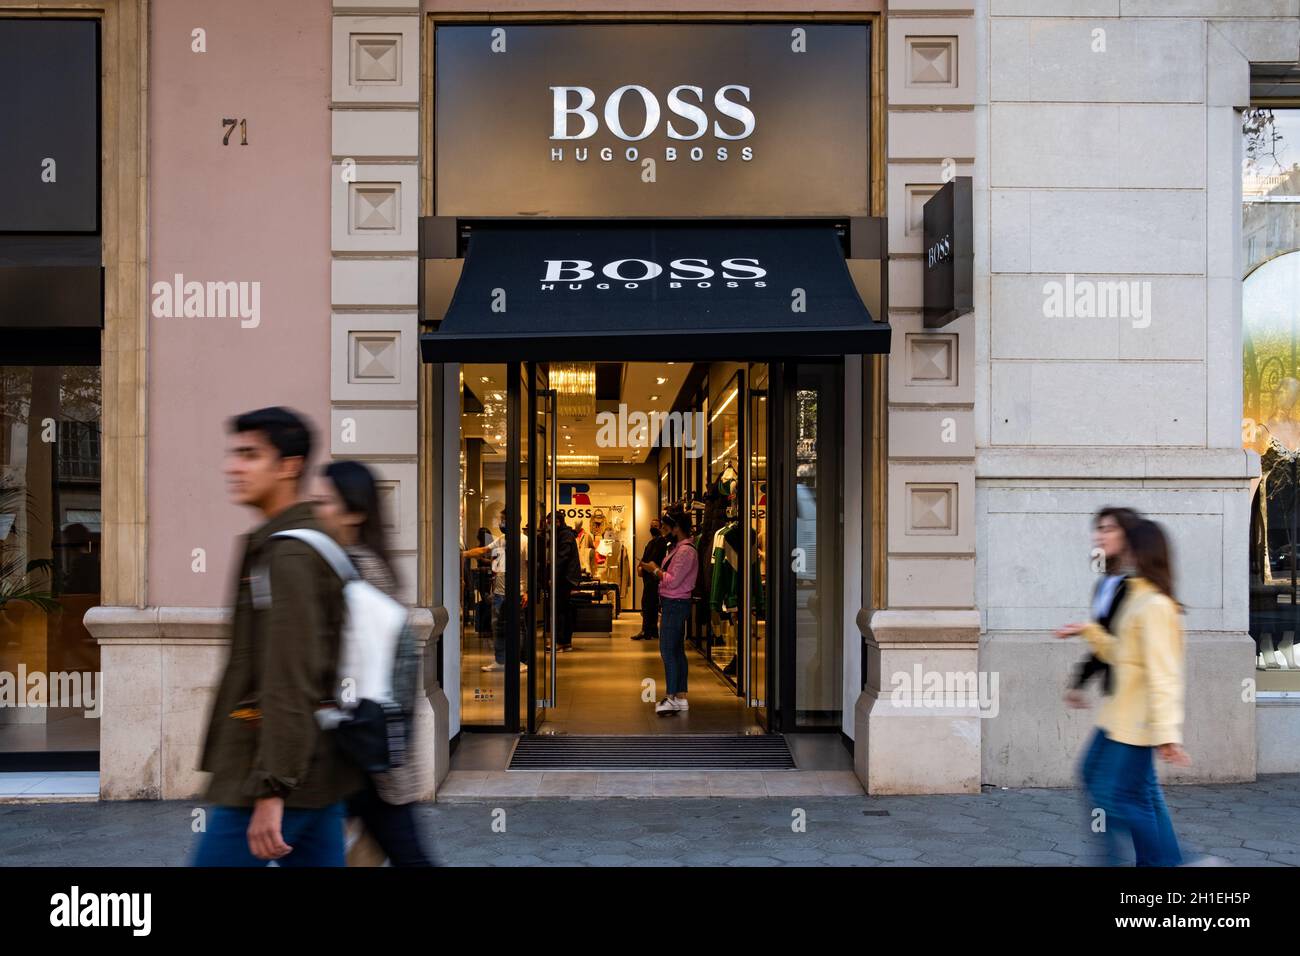 El logo de la empresa de ropa y ropa Hugo Boss se ve en la entrada de una  tienda en Barcelona, España, el 16 de octubre de 2021. (Foto de Davide  Bonaldo/Sipa